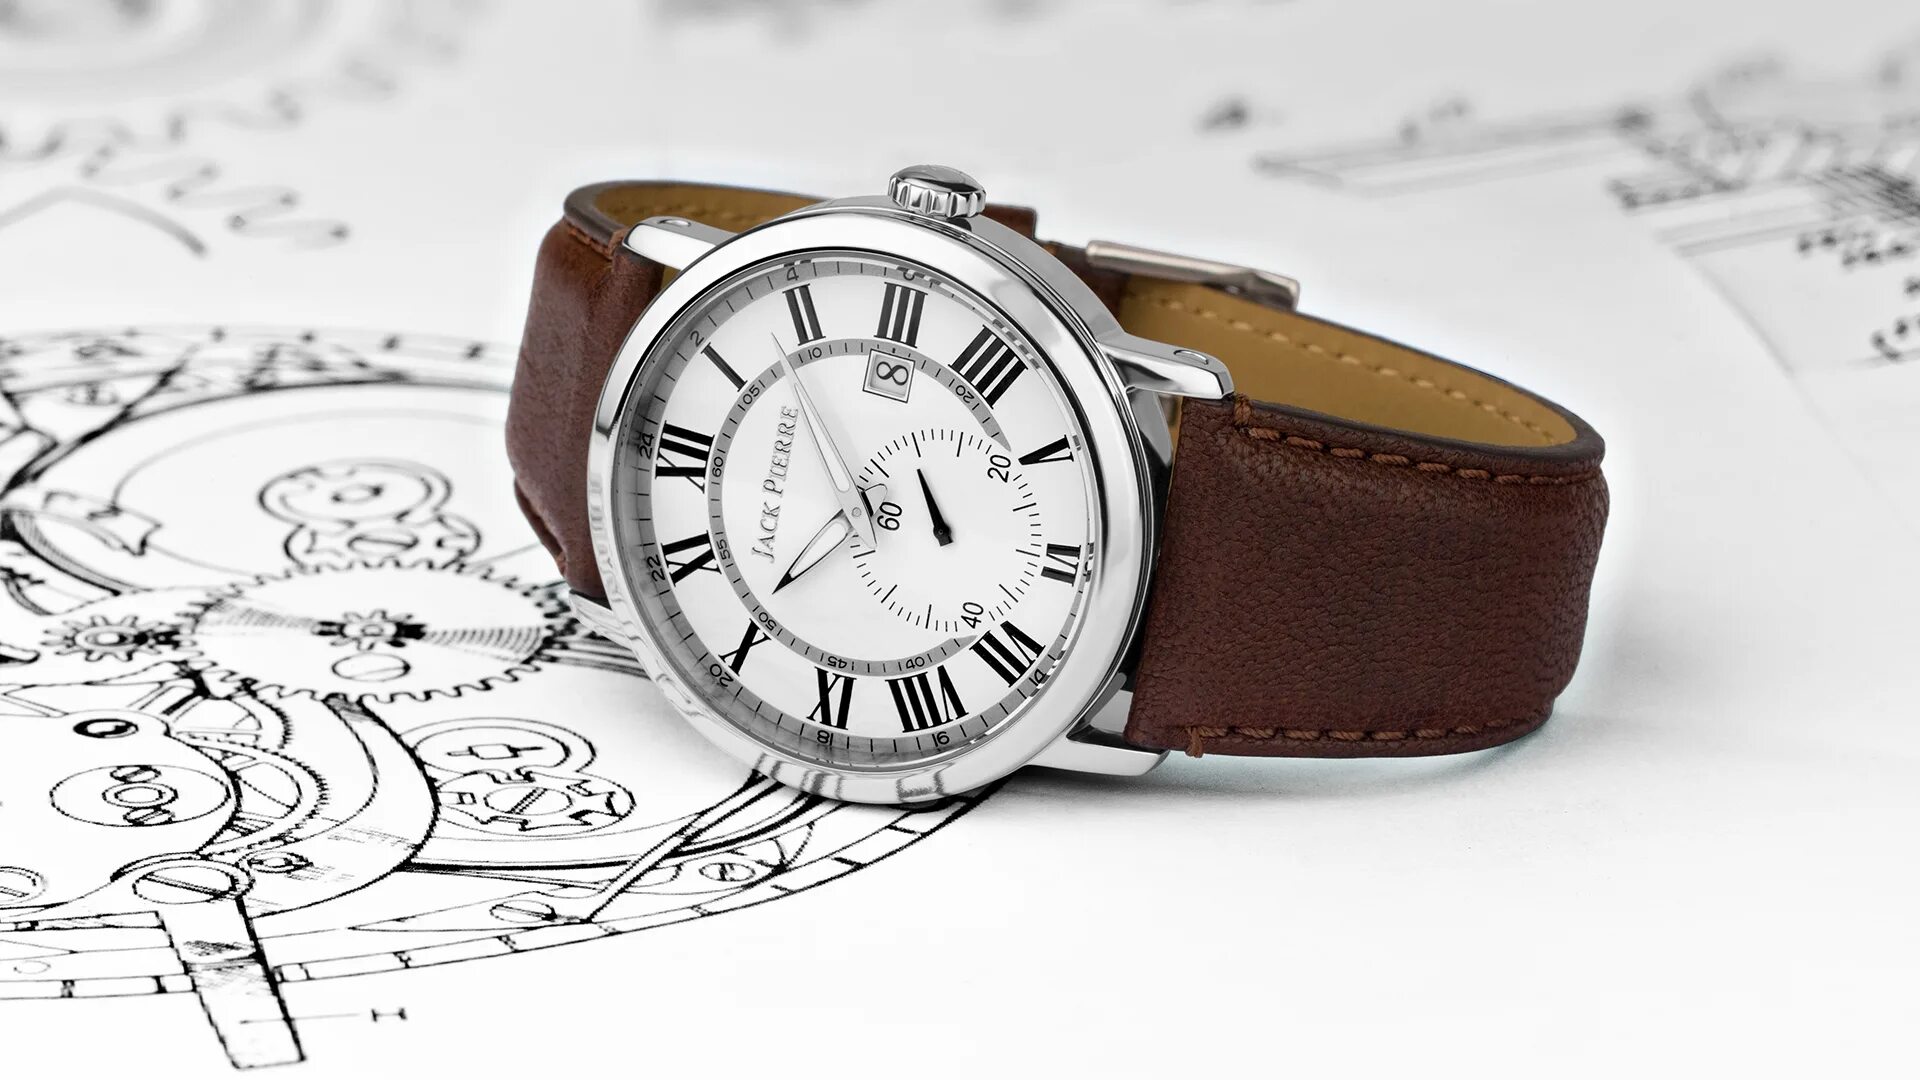 Watches website. Часы наручные на белом фоне. Часы мужские. Швейцарские часы. Красивые наручные часы мужские.